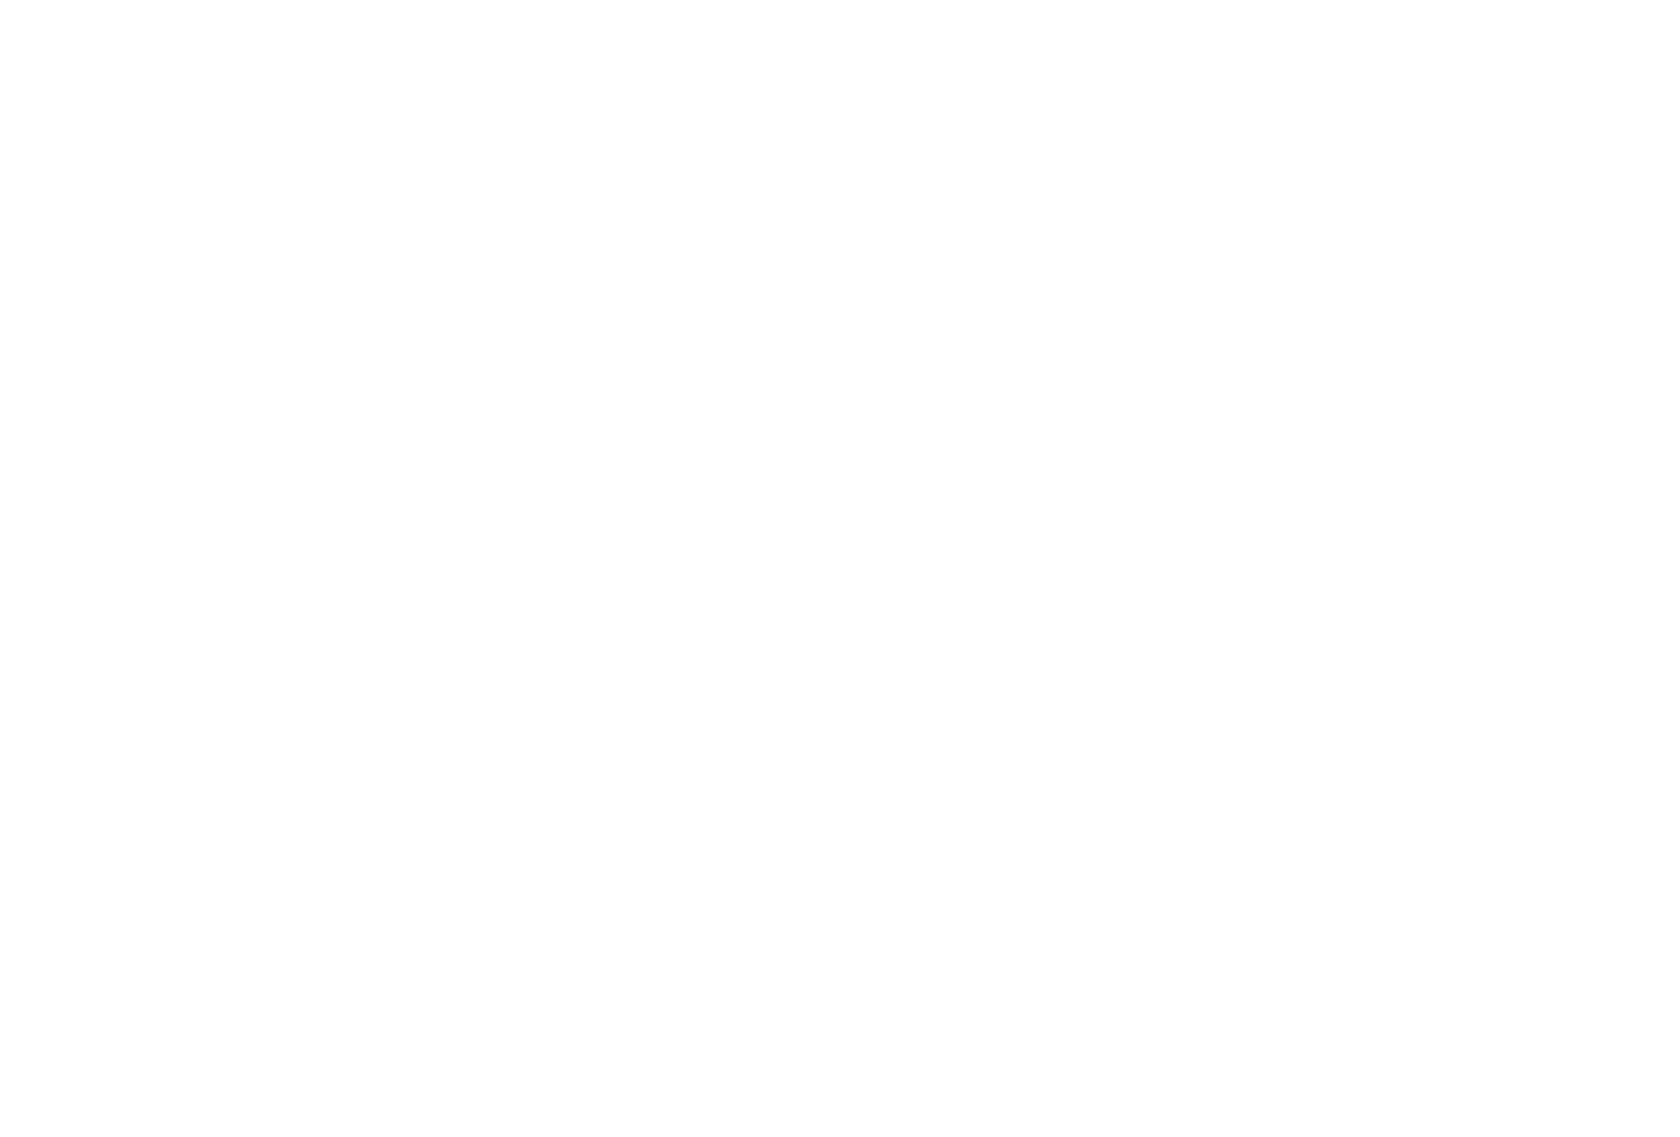 Александр Лукашенко с участниками конгресса - космонавтами Петром Климуком и Владимиром Коваленком, 2018 г.